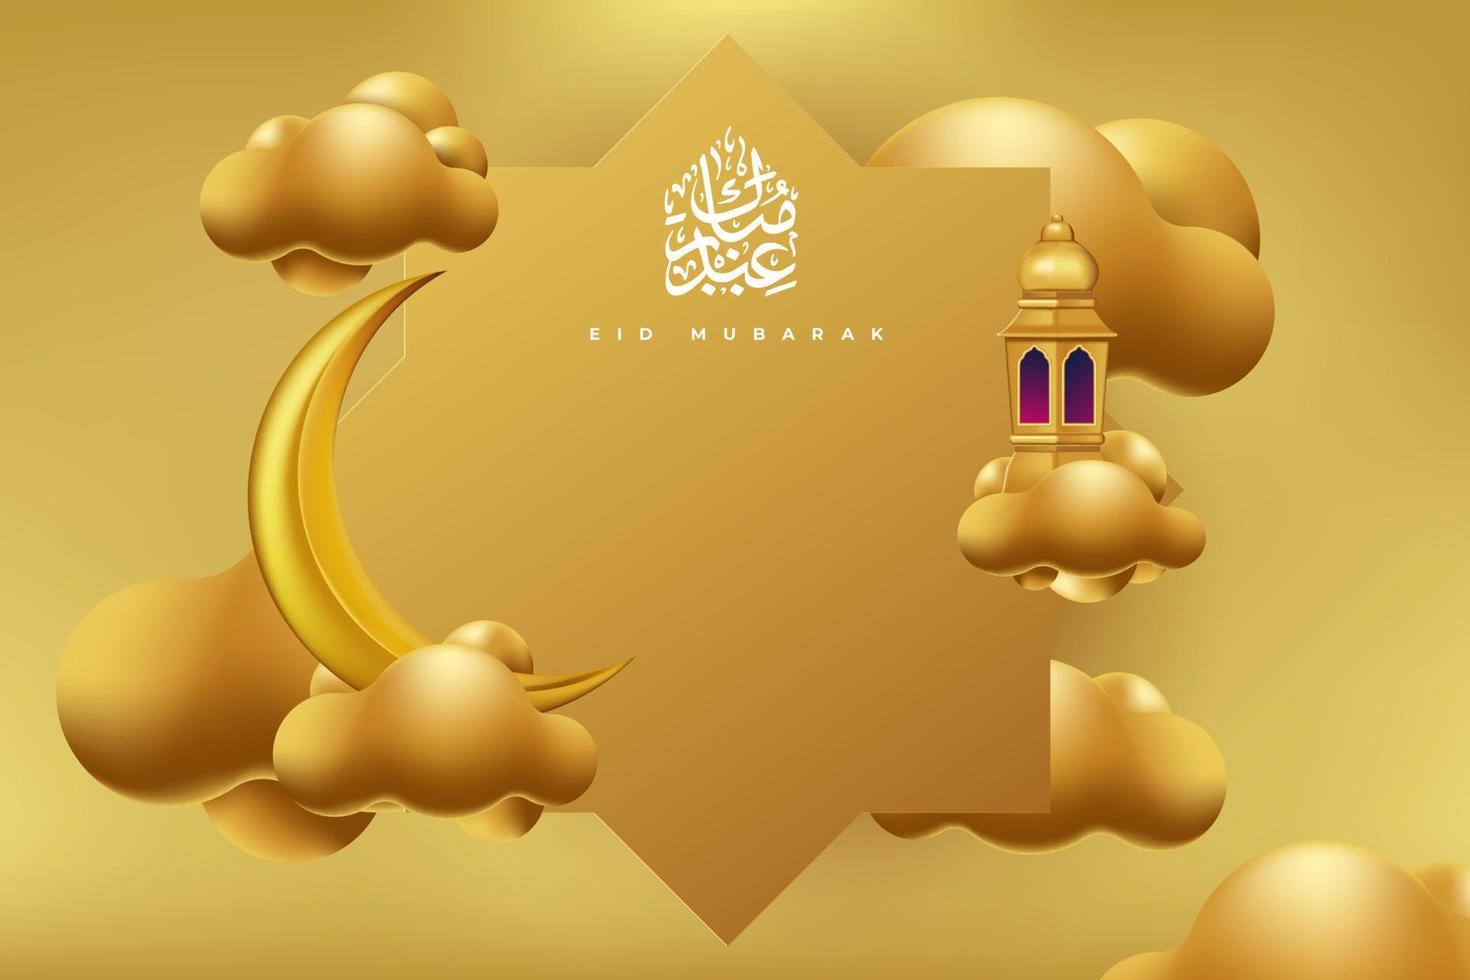 fundo de cartão de ramadan kareem com ilustração vetorial de ornamento islâmico vetor